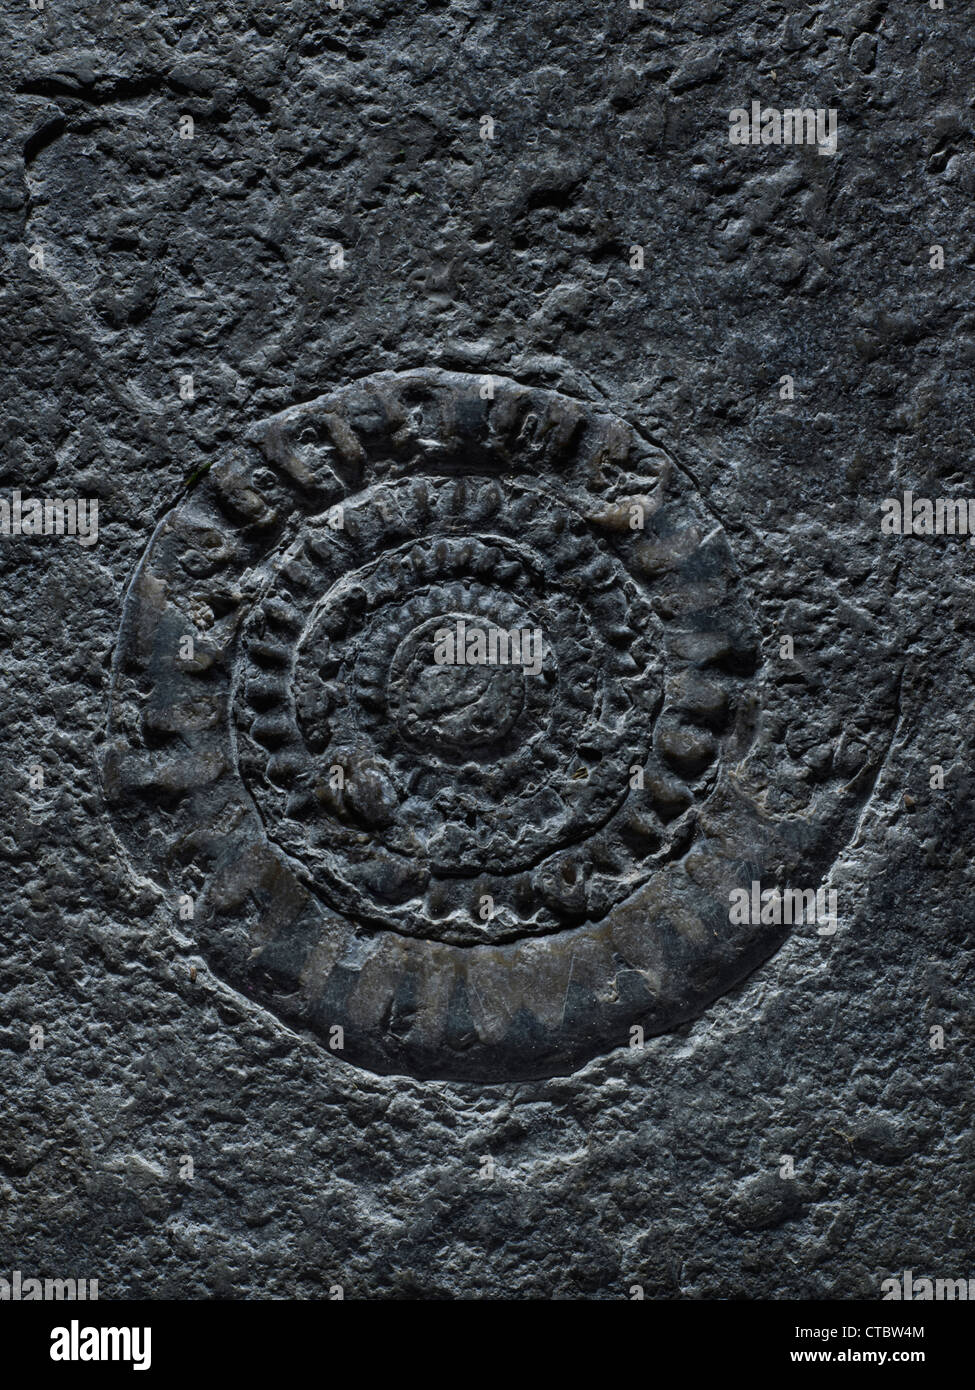 La Abadía de Tewkesbury fósiles de ammonites Foto de stock